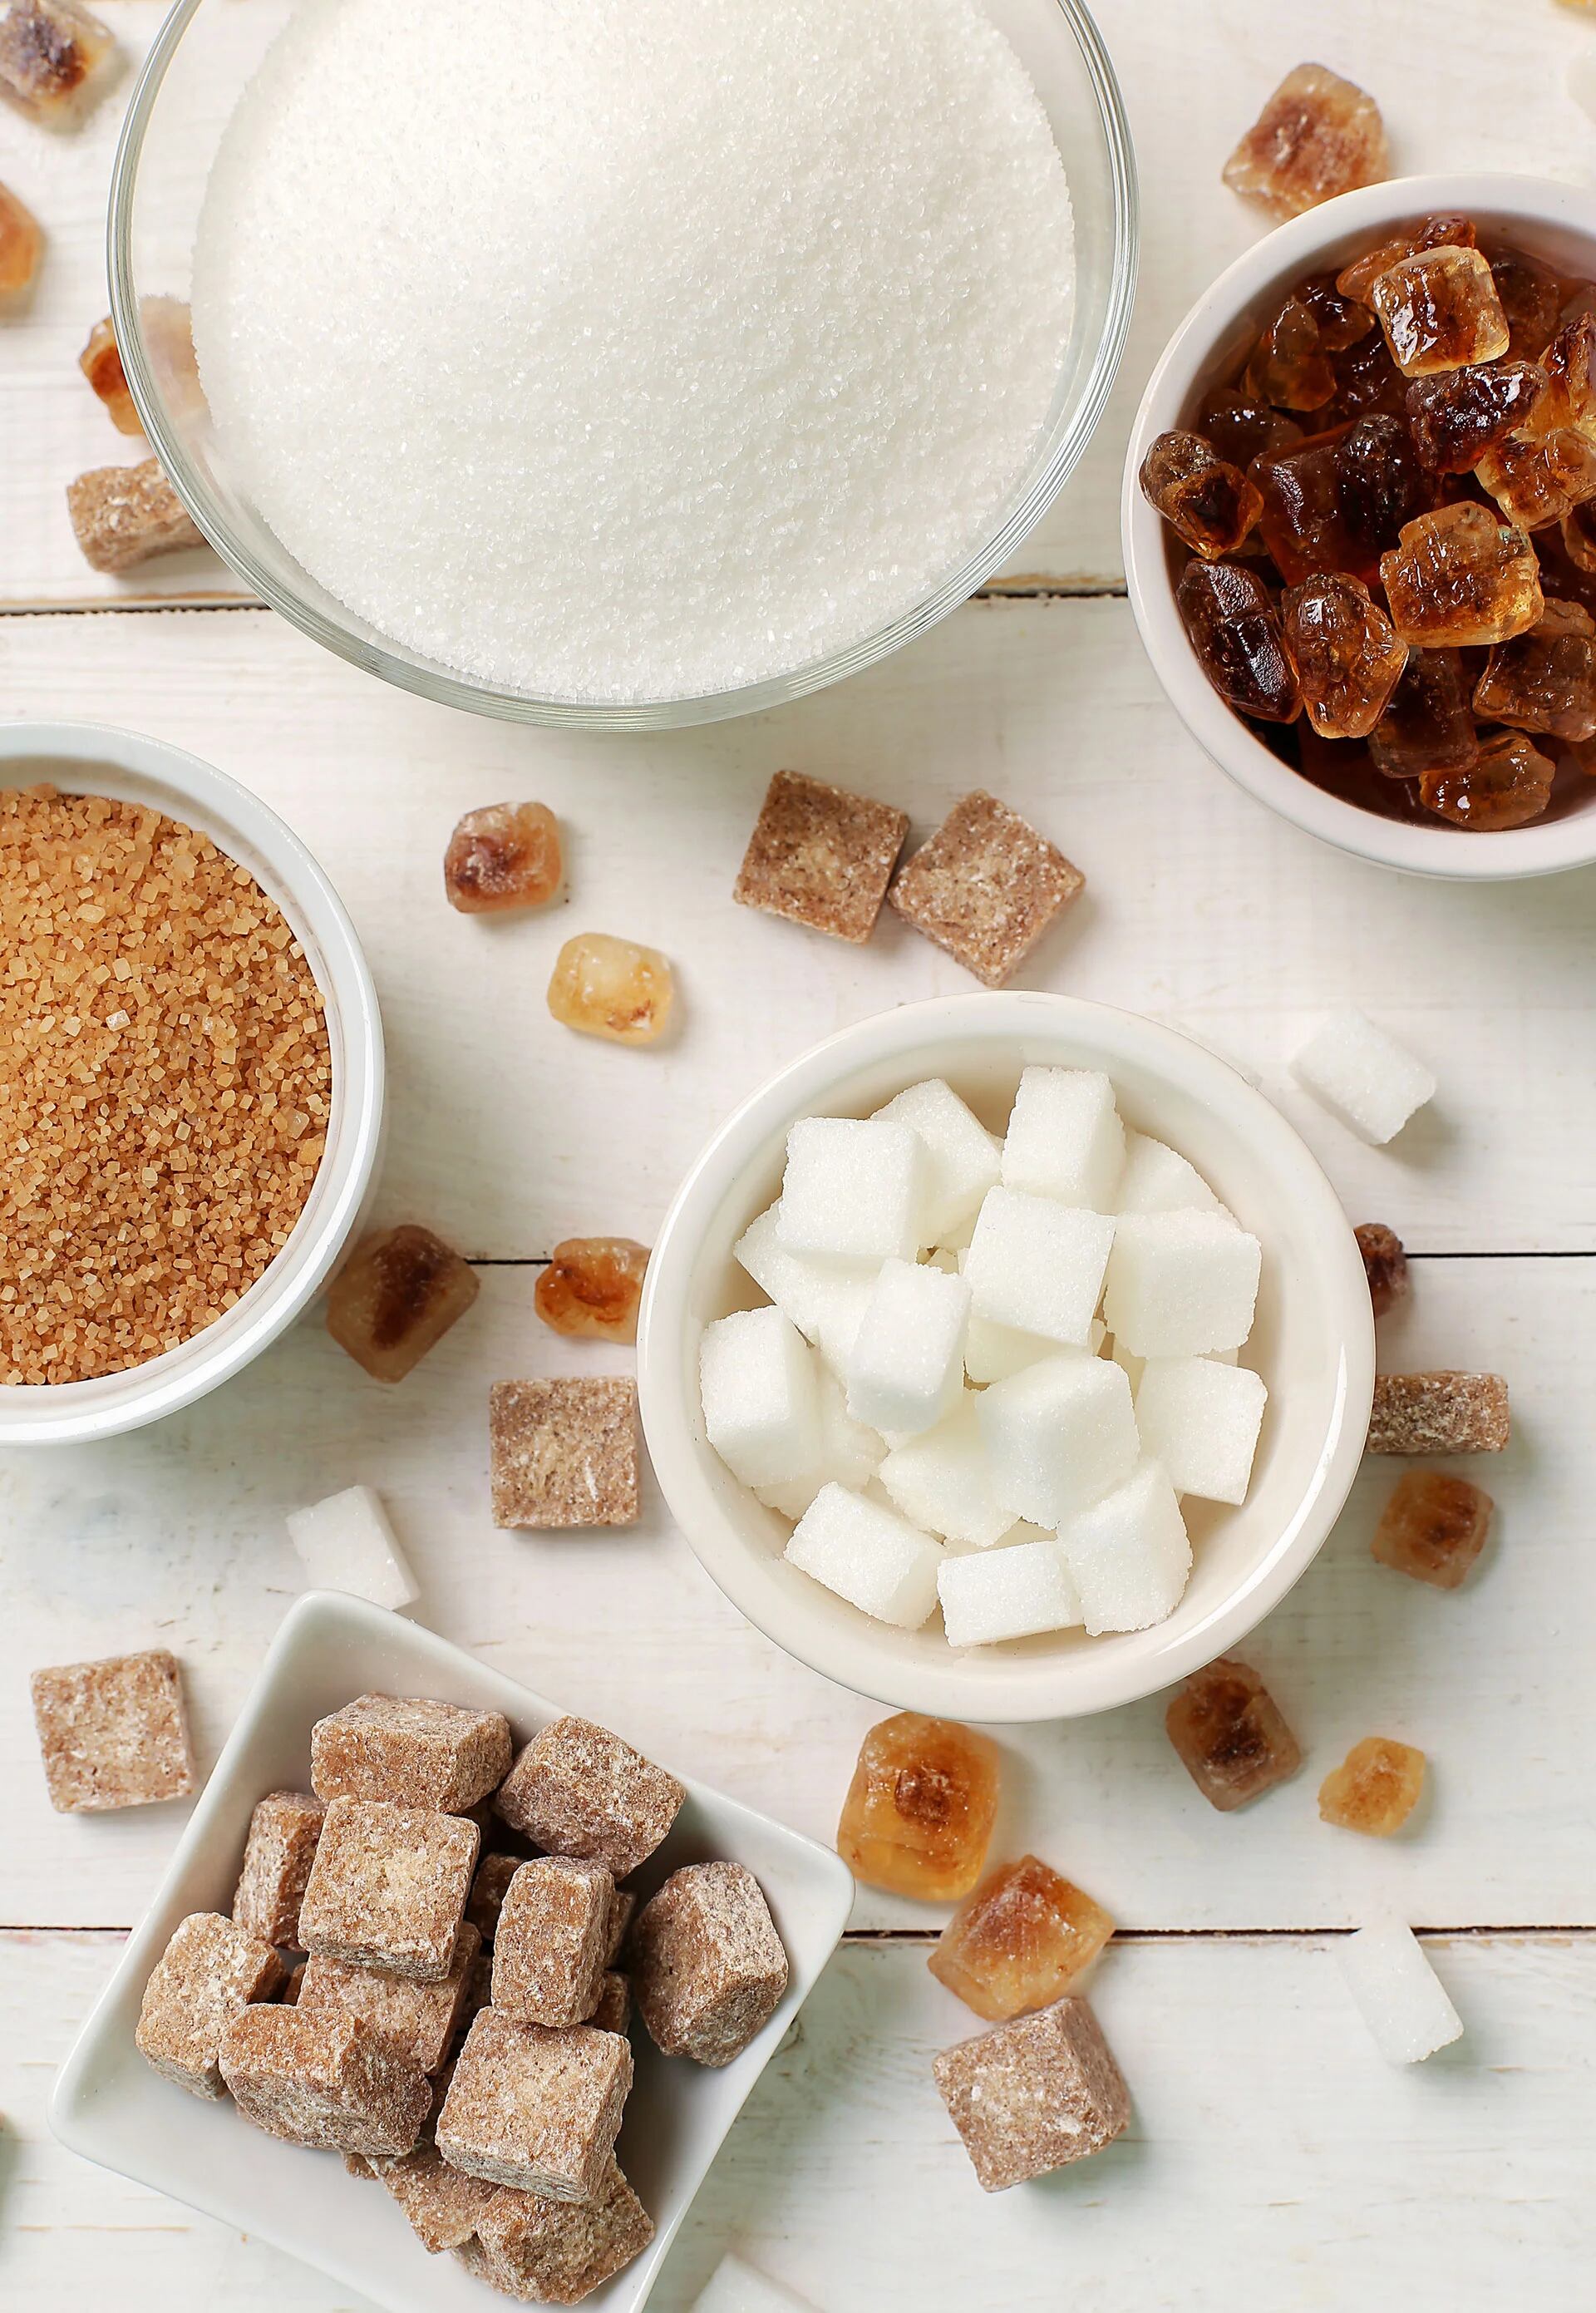 Cuánto más dulce consumimos, más dulce necesitamos, aseguran los expertos (Freepik)